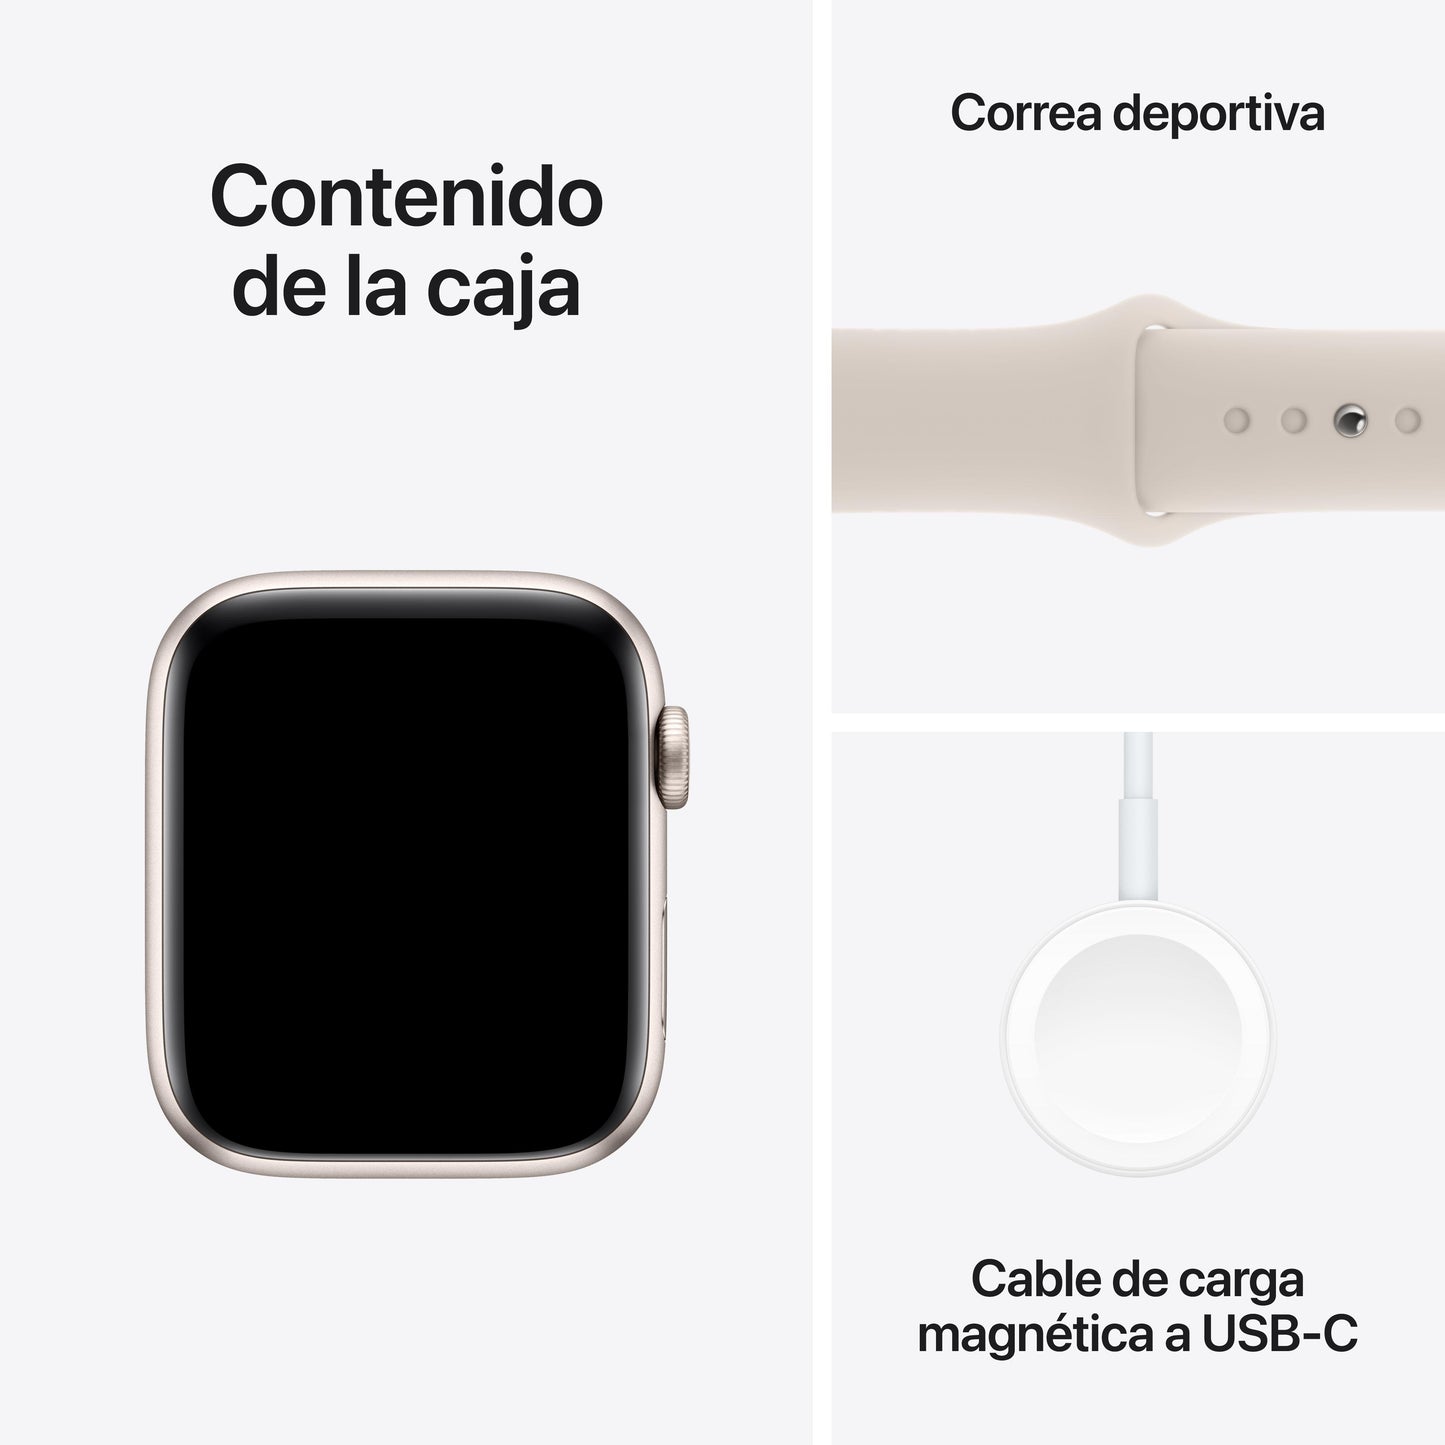 Apple Watch SE (GPS + Cellular) - Caja de aluminio en blanco estrella de 44 mm - Correa deportiva blanco estrella - Talla M/L